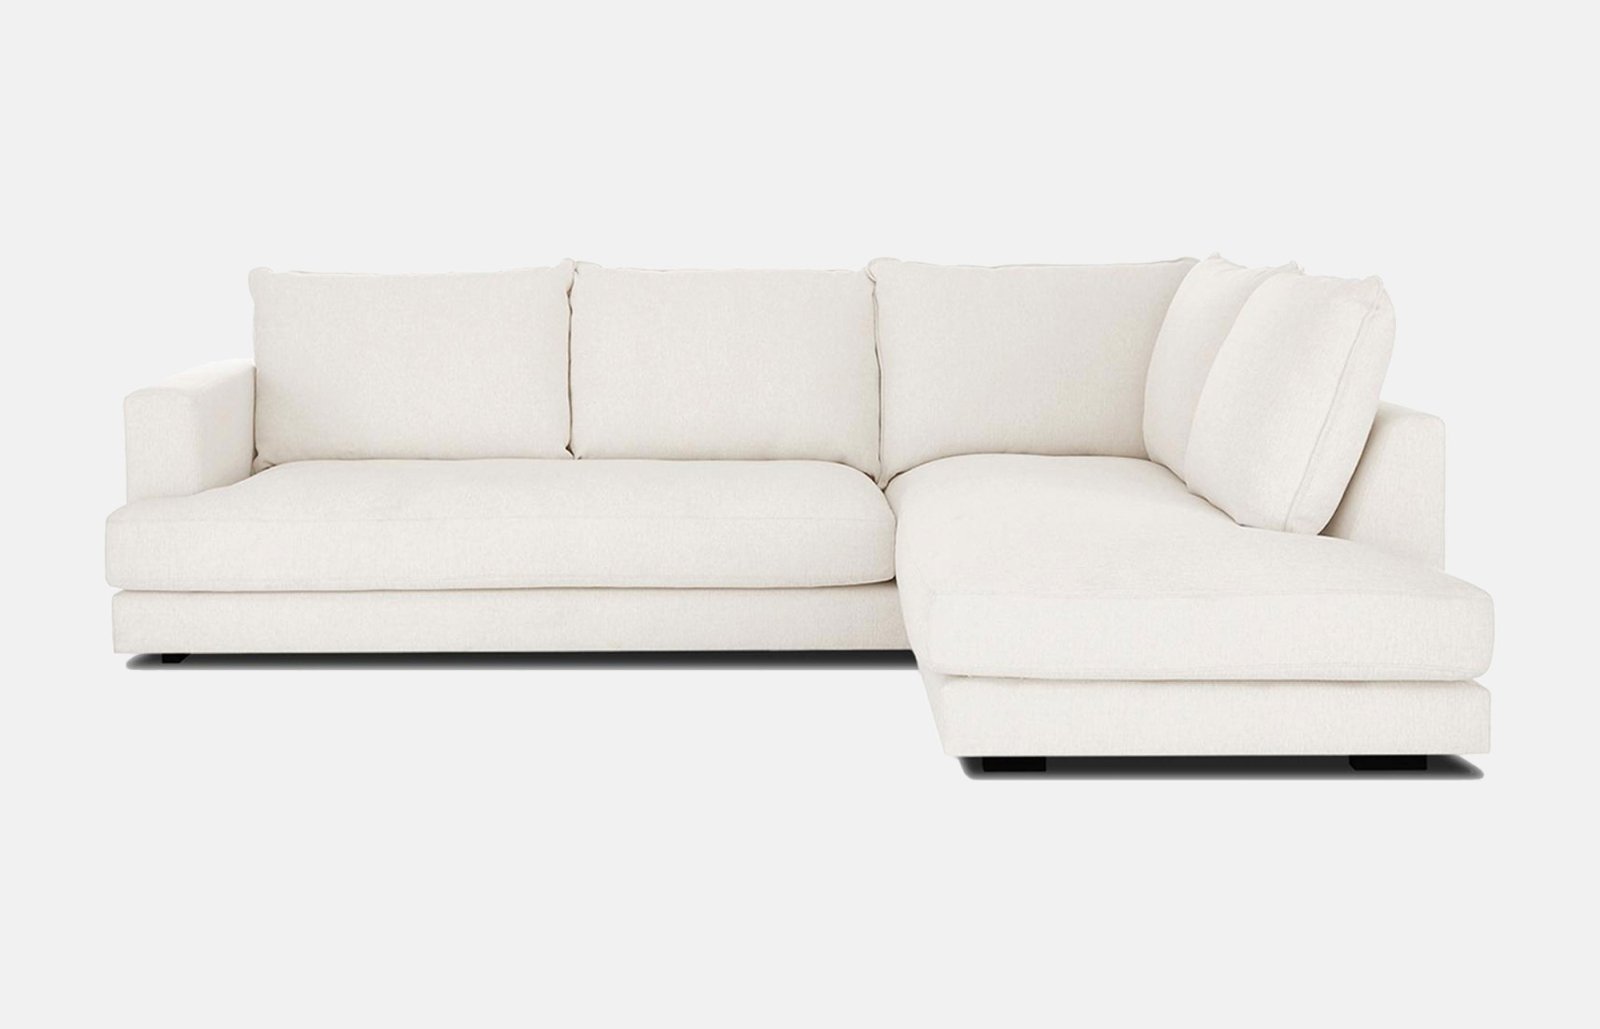 En myk og tradisjonell sofa med sjeselong, ryggputer og armlen. Den har to sitteputer og har et behagelig stoff i fargen hvit.